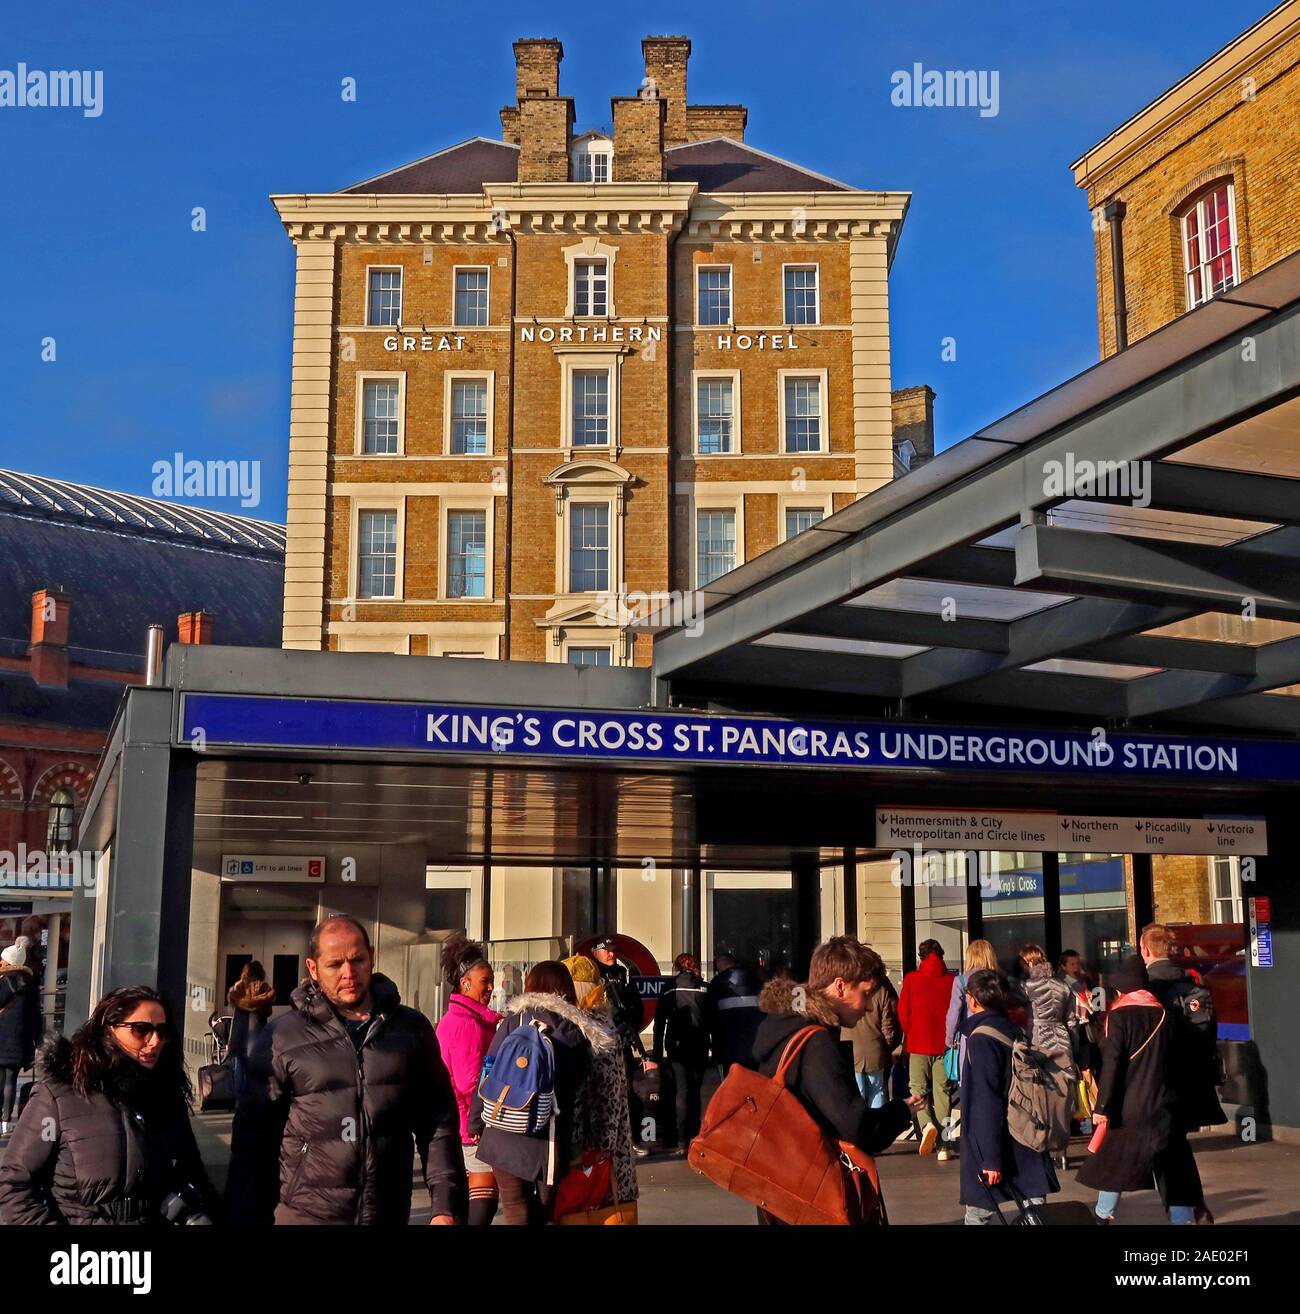 Kings Cross, Station de métro St Pancras, Euston Road, Camden, Nord de Londres, Angleterre, Royaume-Uni Banque D'Images